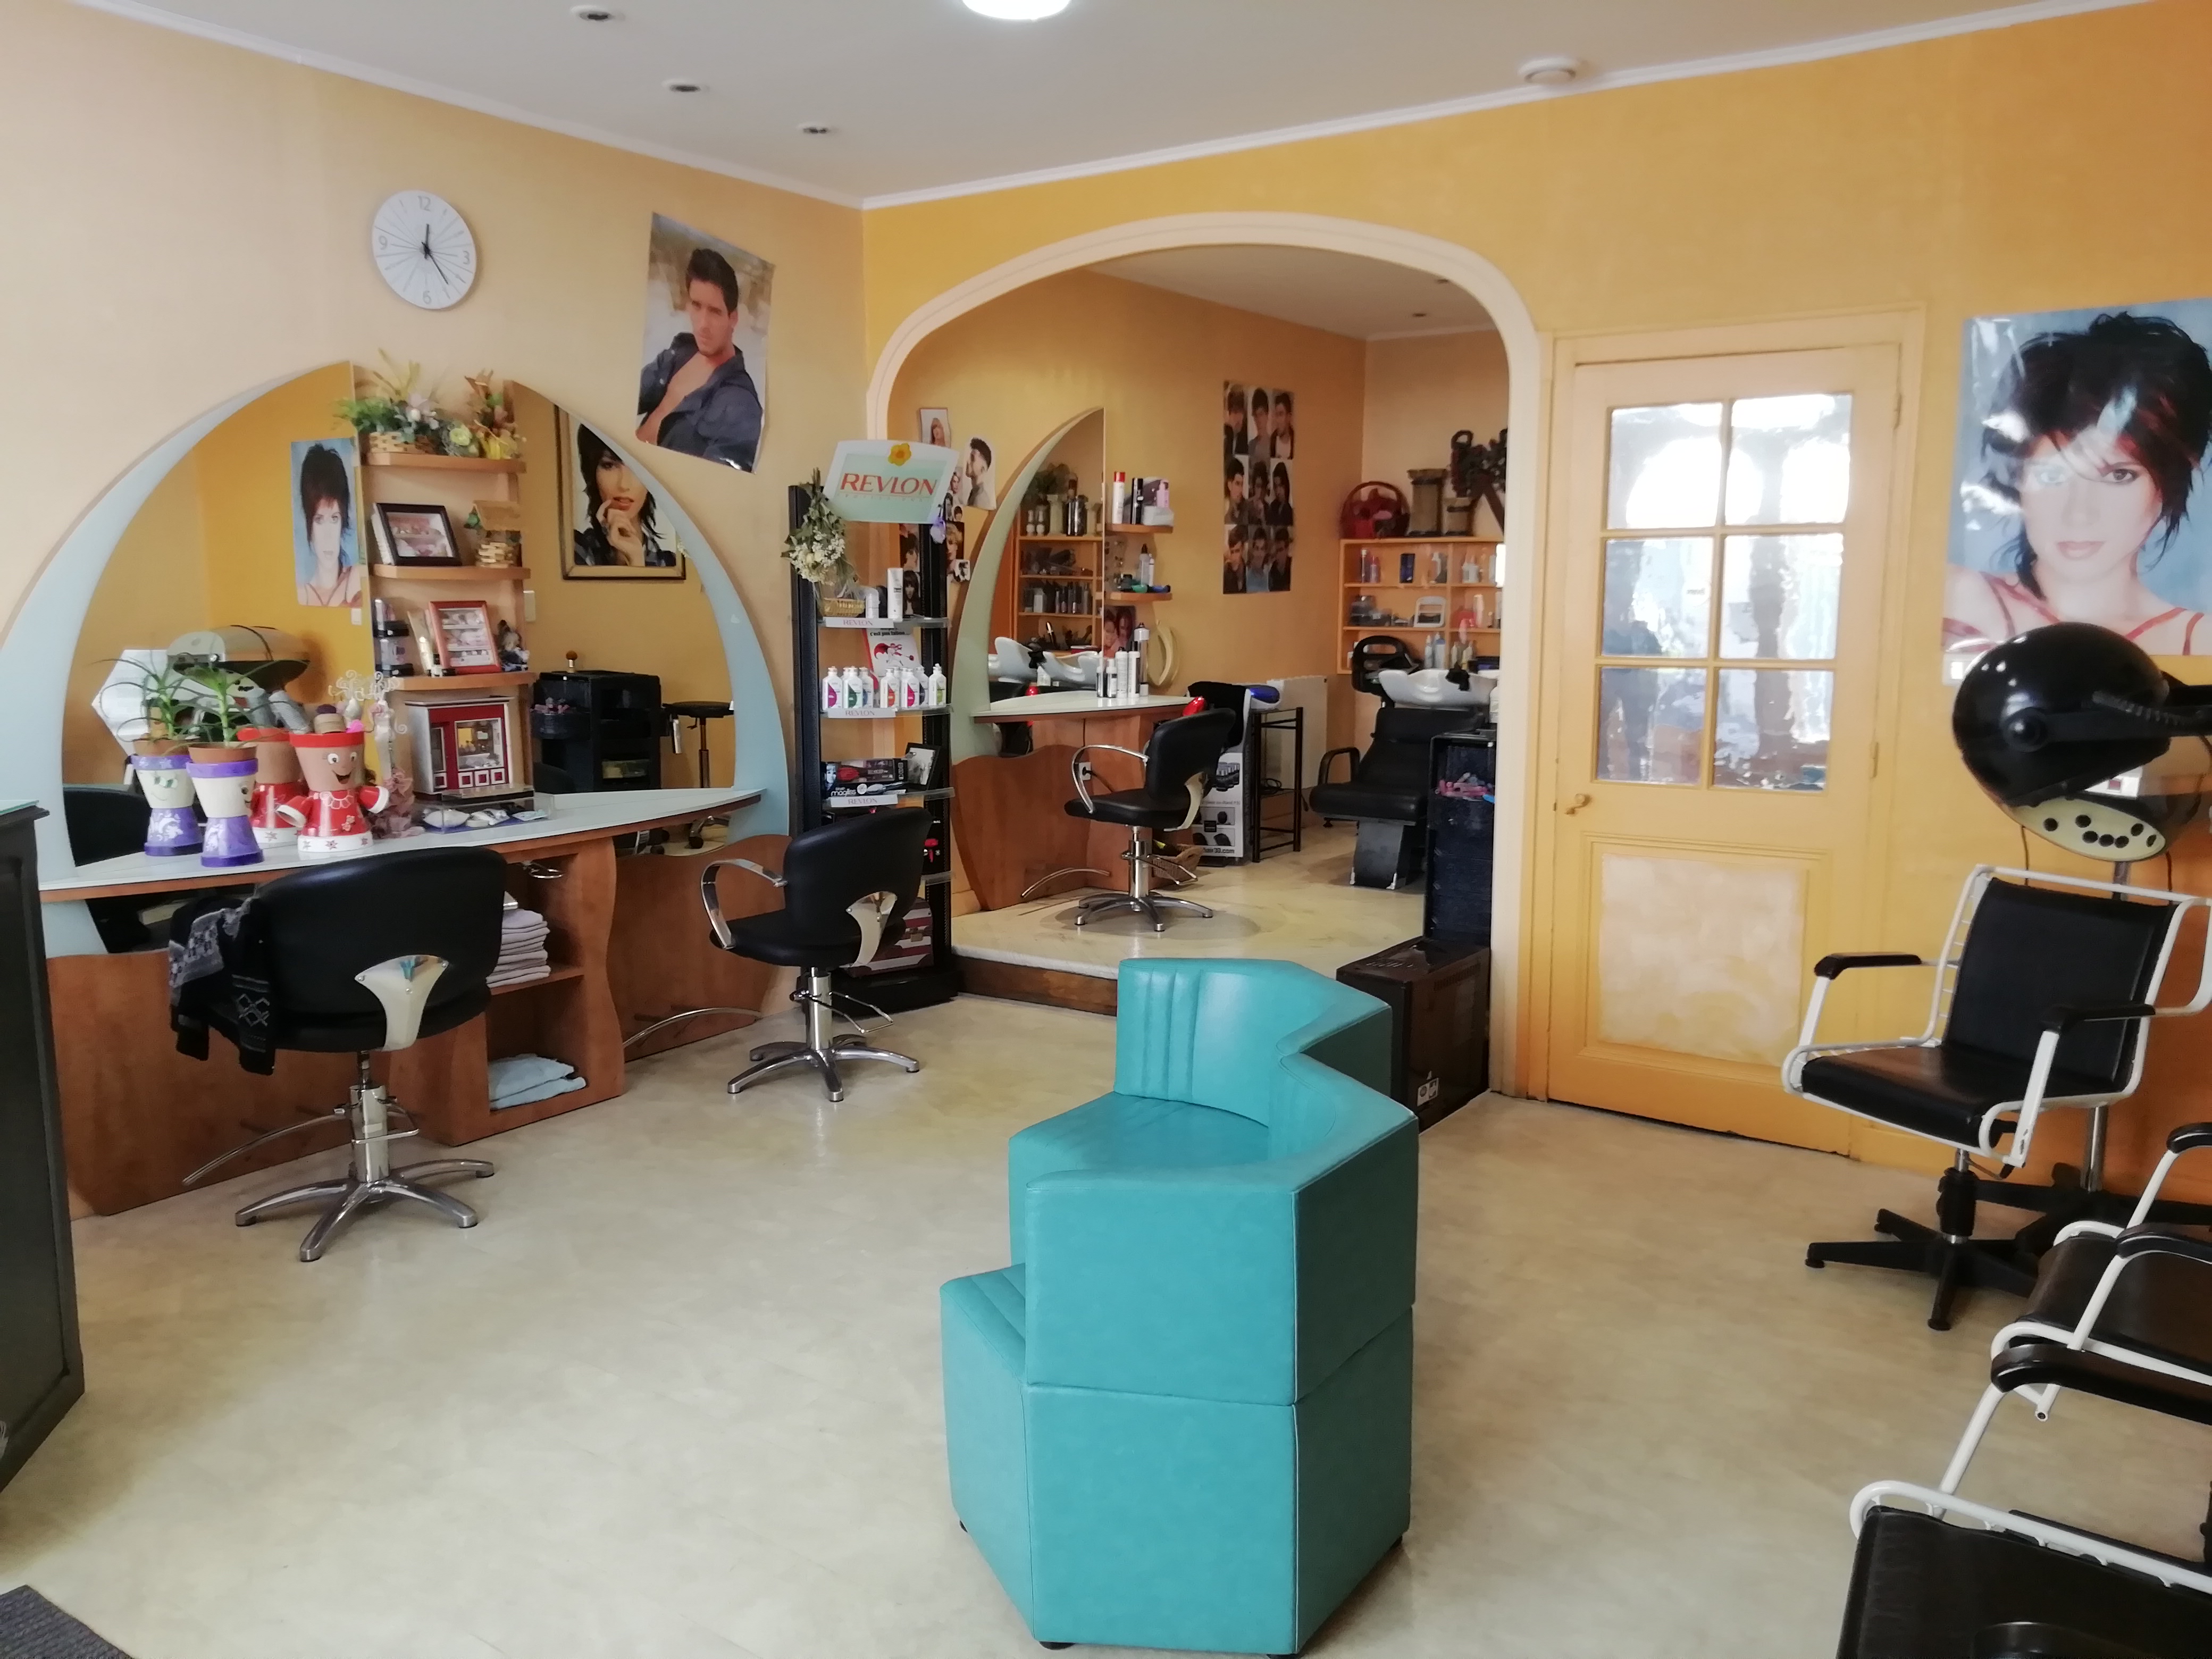 Vends salon de coiffure, après 37 années d'activités, pour projet de départ à la retraite.
Salon crée en 1987 dans un village de plus de mille habitants.
3 coiffeuses, 2 bacs à shampoings, pièce attenante, d'une superficie totale d'environ 50 m2.
Clientèle fidèle.